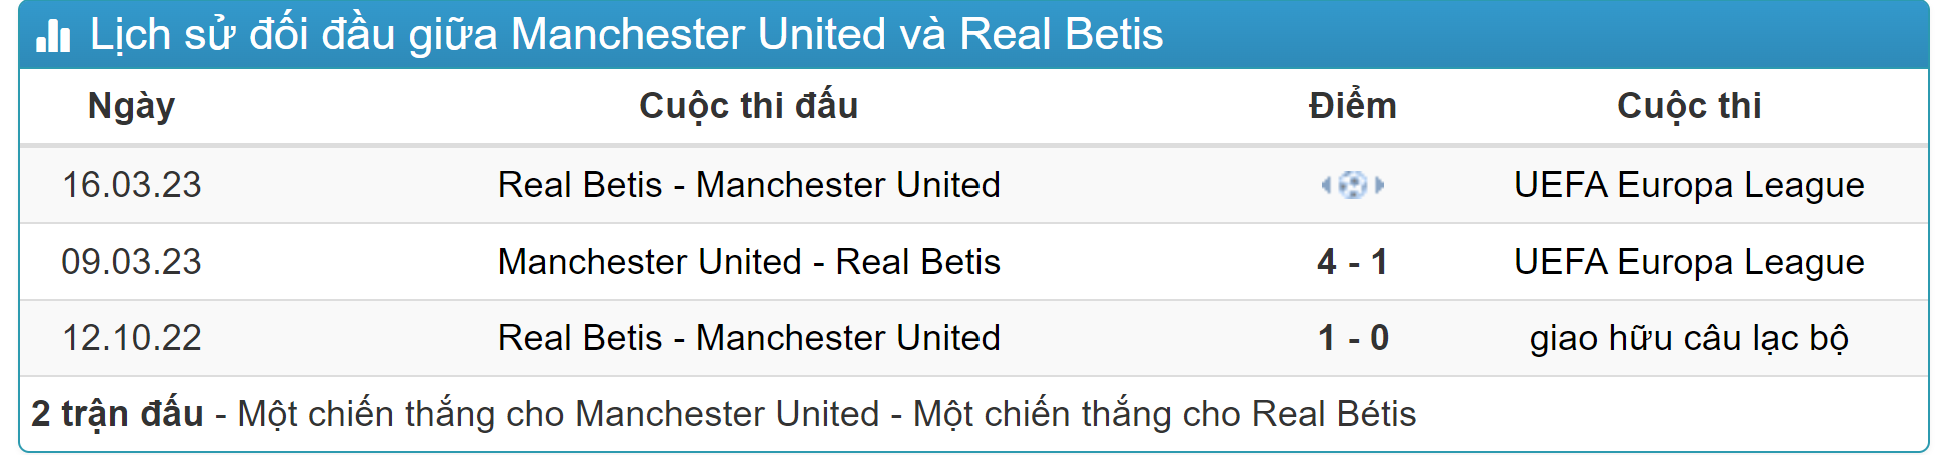 Kết quả lịch sử đối đầu Real Betis vs Man United